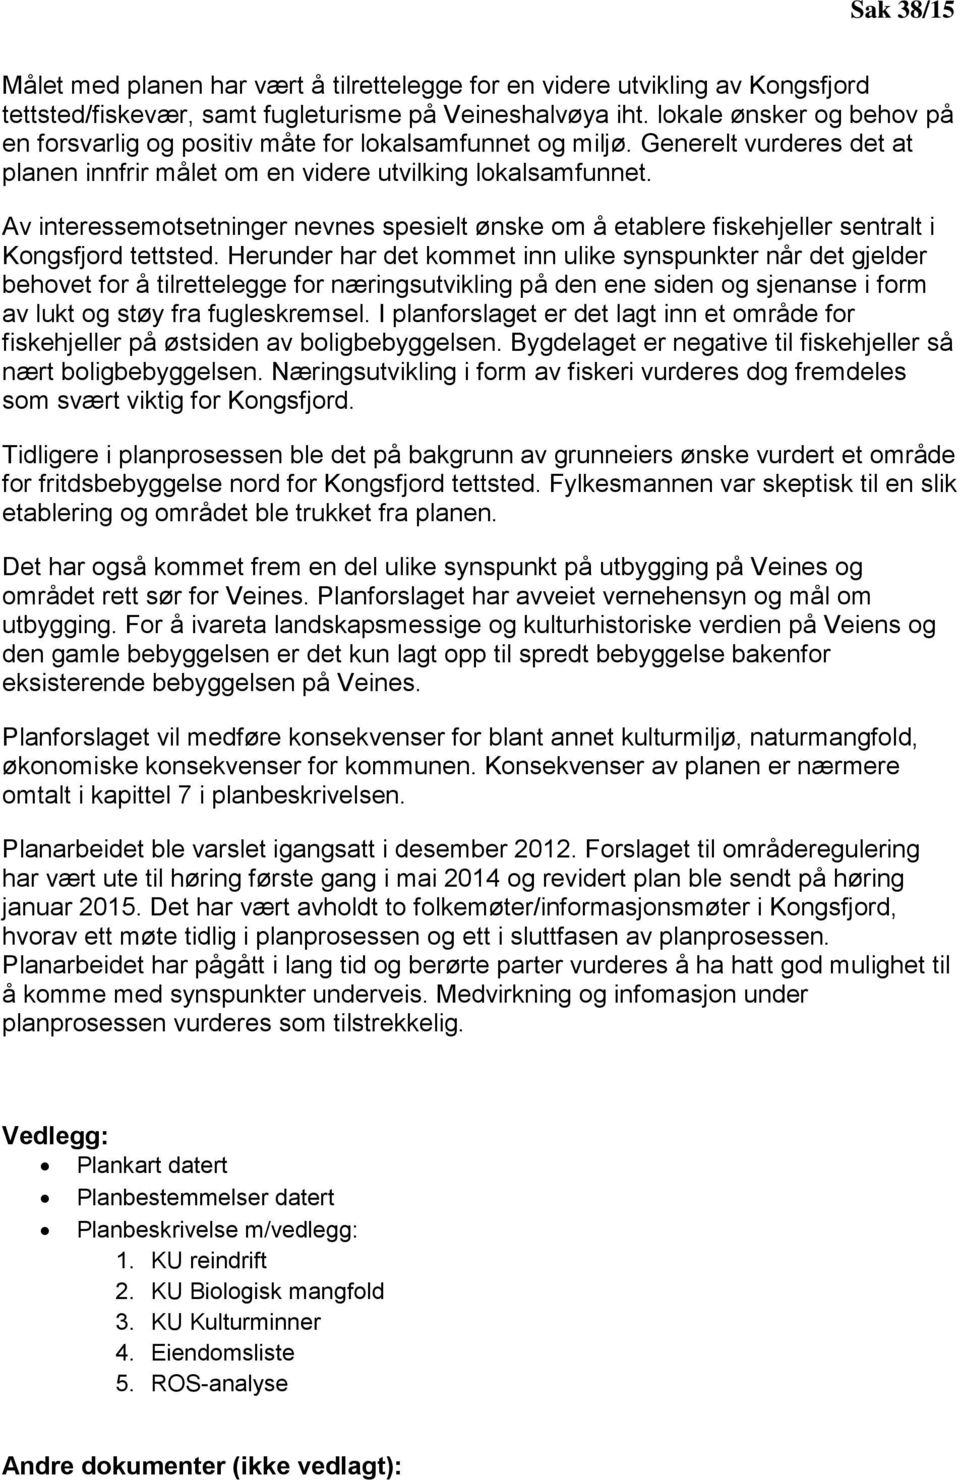 Av interessemotsetninger nevnes spesielt ønske om å etablere fiskehjeller sentralt i Kongsfjord tettsted.